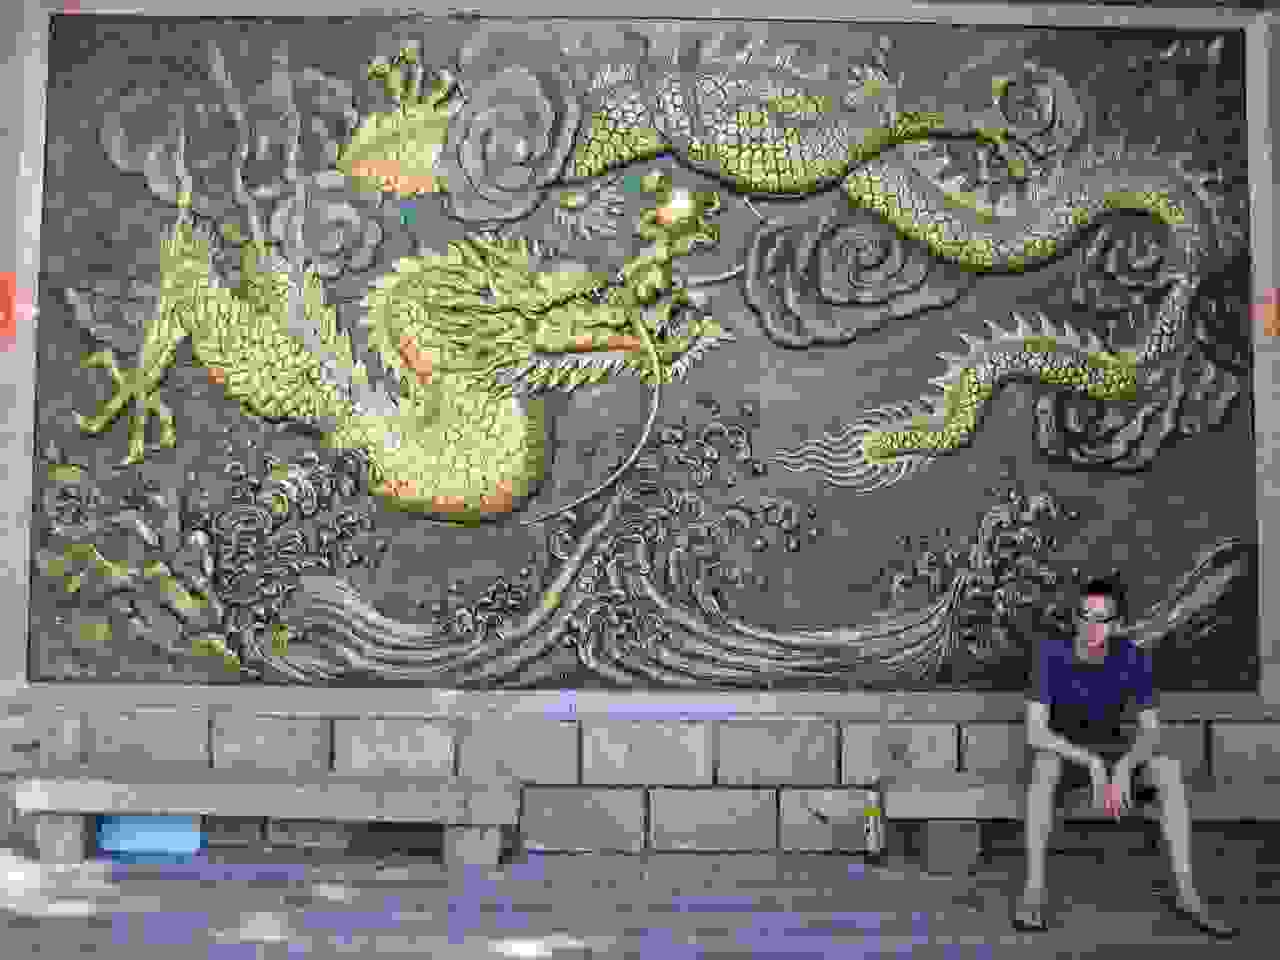 Dragon background in Taiwan